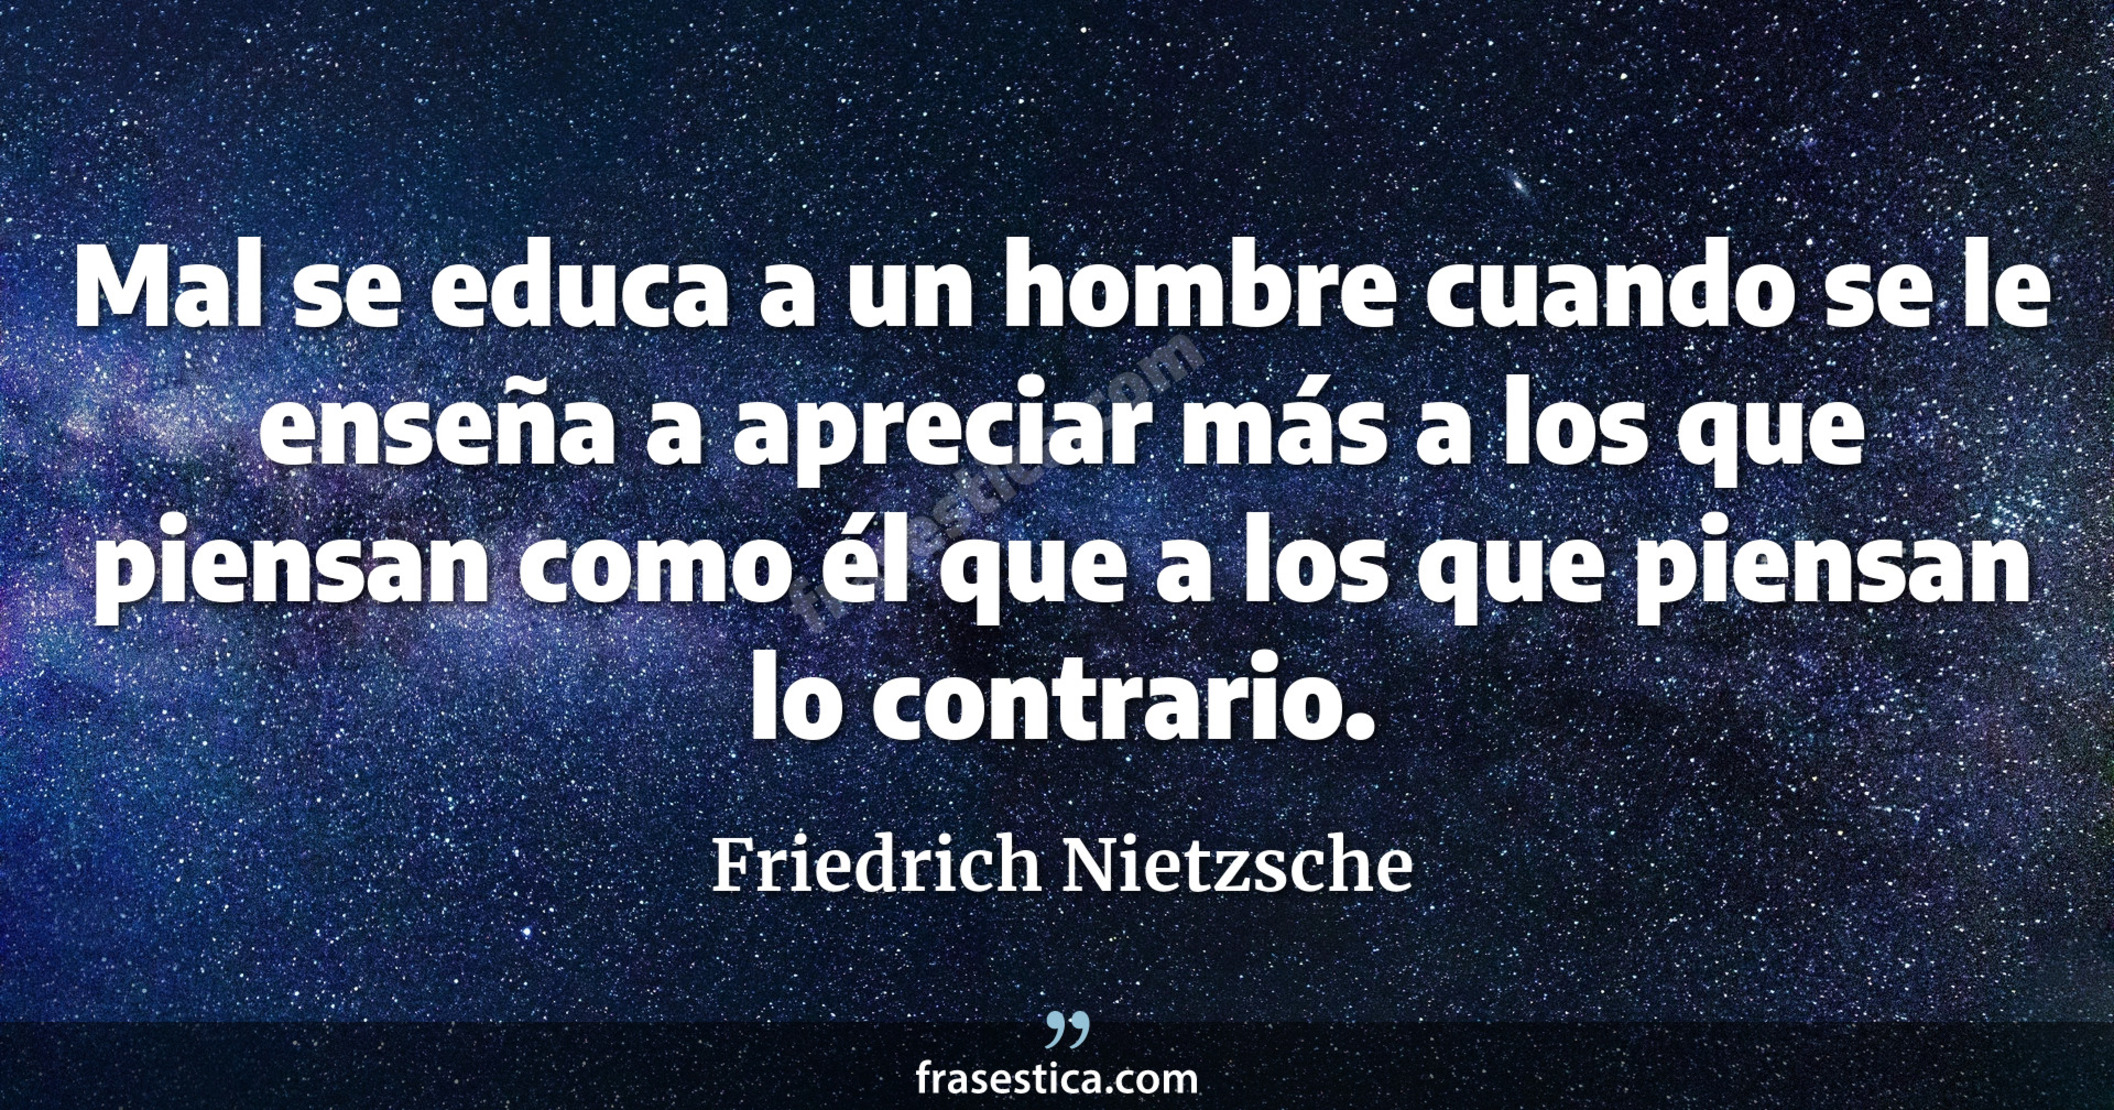 Mal se educa a un hombre cuando se le enseña a apreciar más a los que piensan como él que a los que piensan lo contrario. - Friedrich Nietzsche